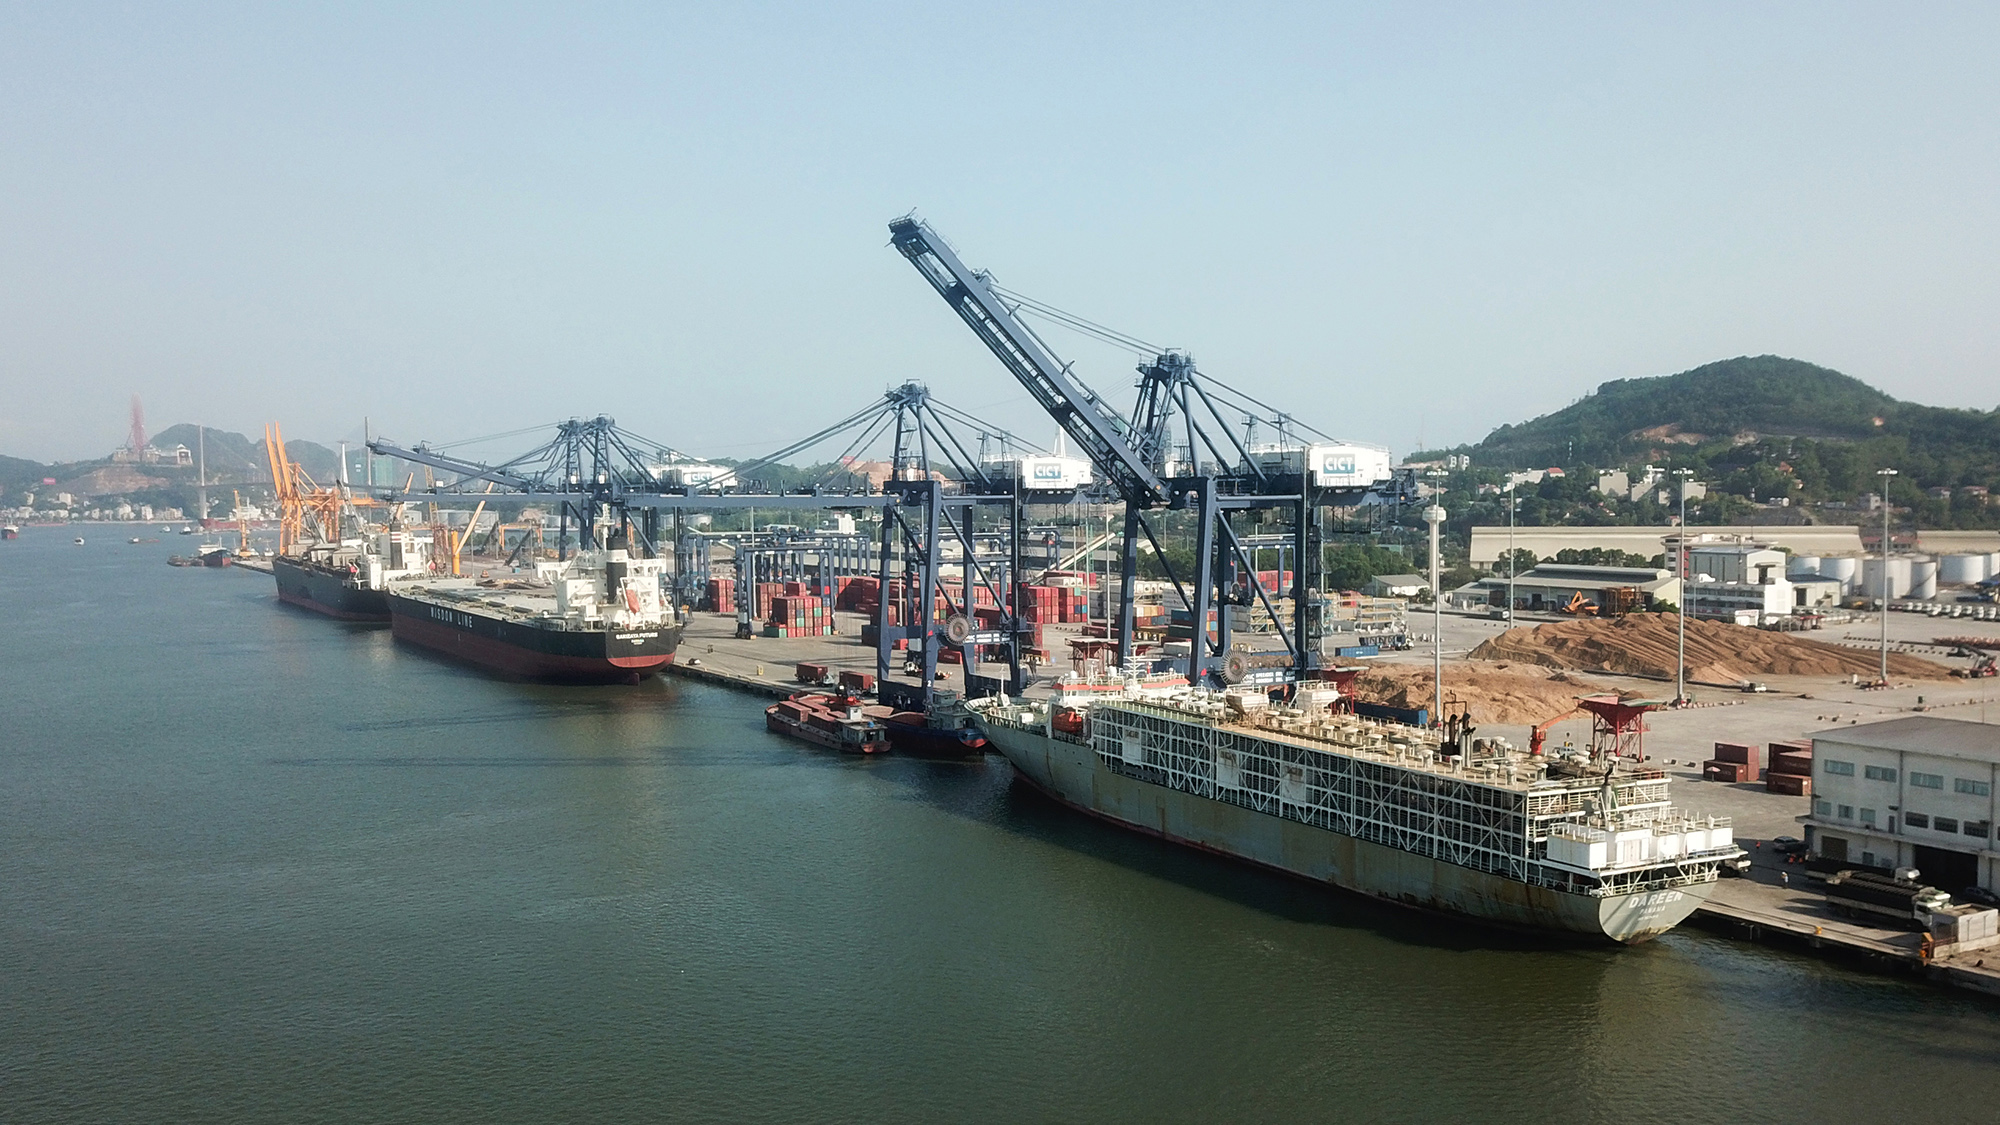 Cảng Container Quốc tế Cái Lân là cảng biển sâu nhất miền Bắc, có thể tiếp nhận tàu trọng tải lên đến 80.000 tấn, đáp ứng nhu cầu làm hàng của các hãng vận tải quốc tế, góp phần thúc đẩy kinh tế cảng biển của Quảng Ninh phát triển